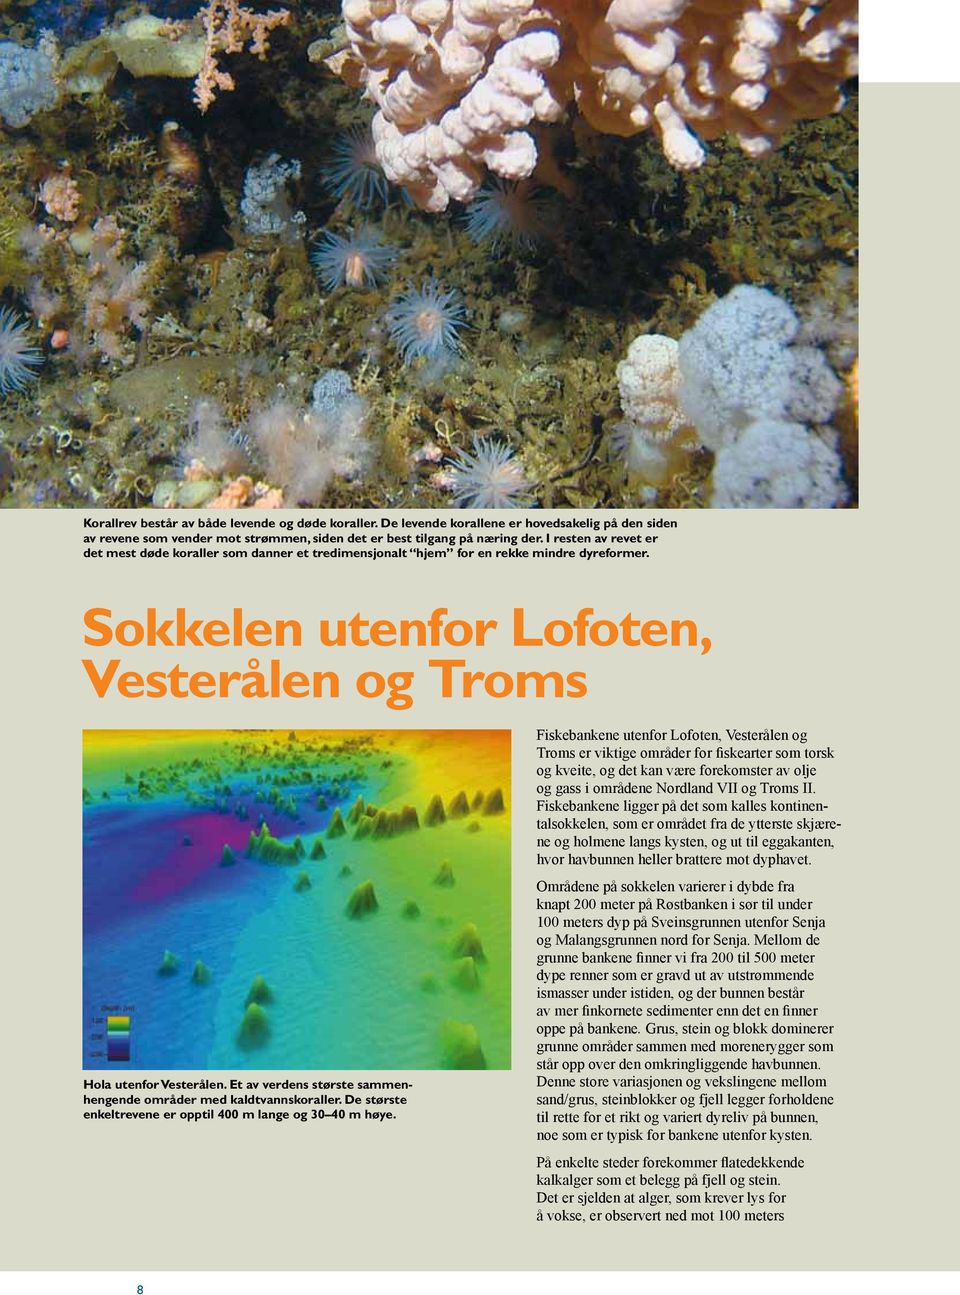 Et av verdens største sammenhengende områder med kaldtvannskoraller. De største enkeltrevene er opptil 400 m lange og 30 40 m høye.